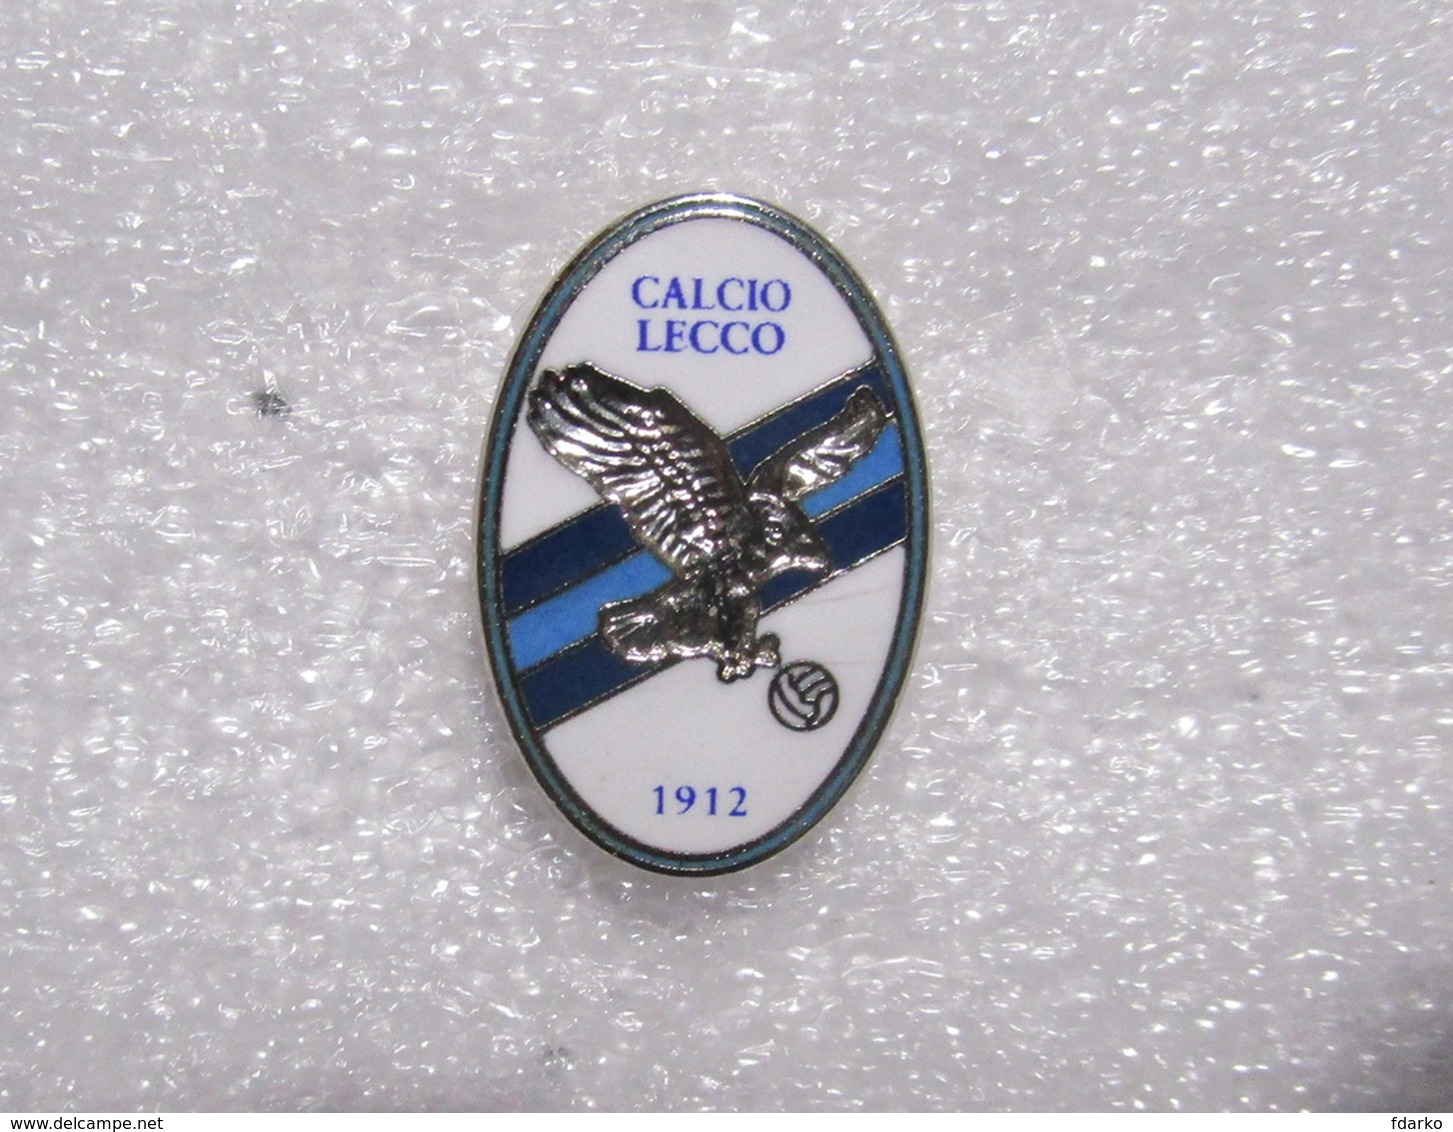 CALCIO LECCO - Distintivo Spilla Football Pins Lombardia - Fútbol